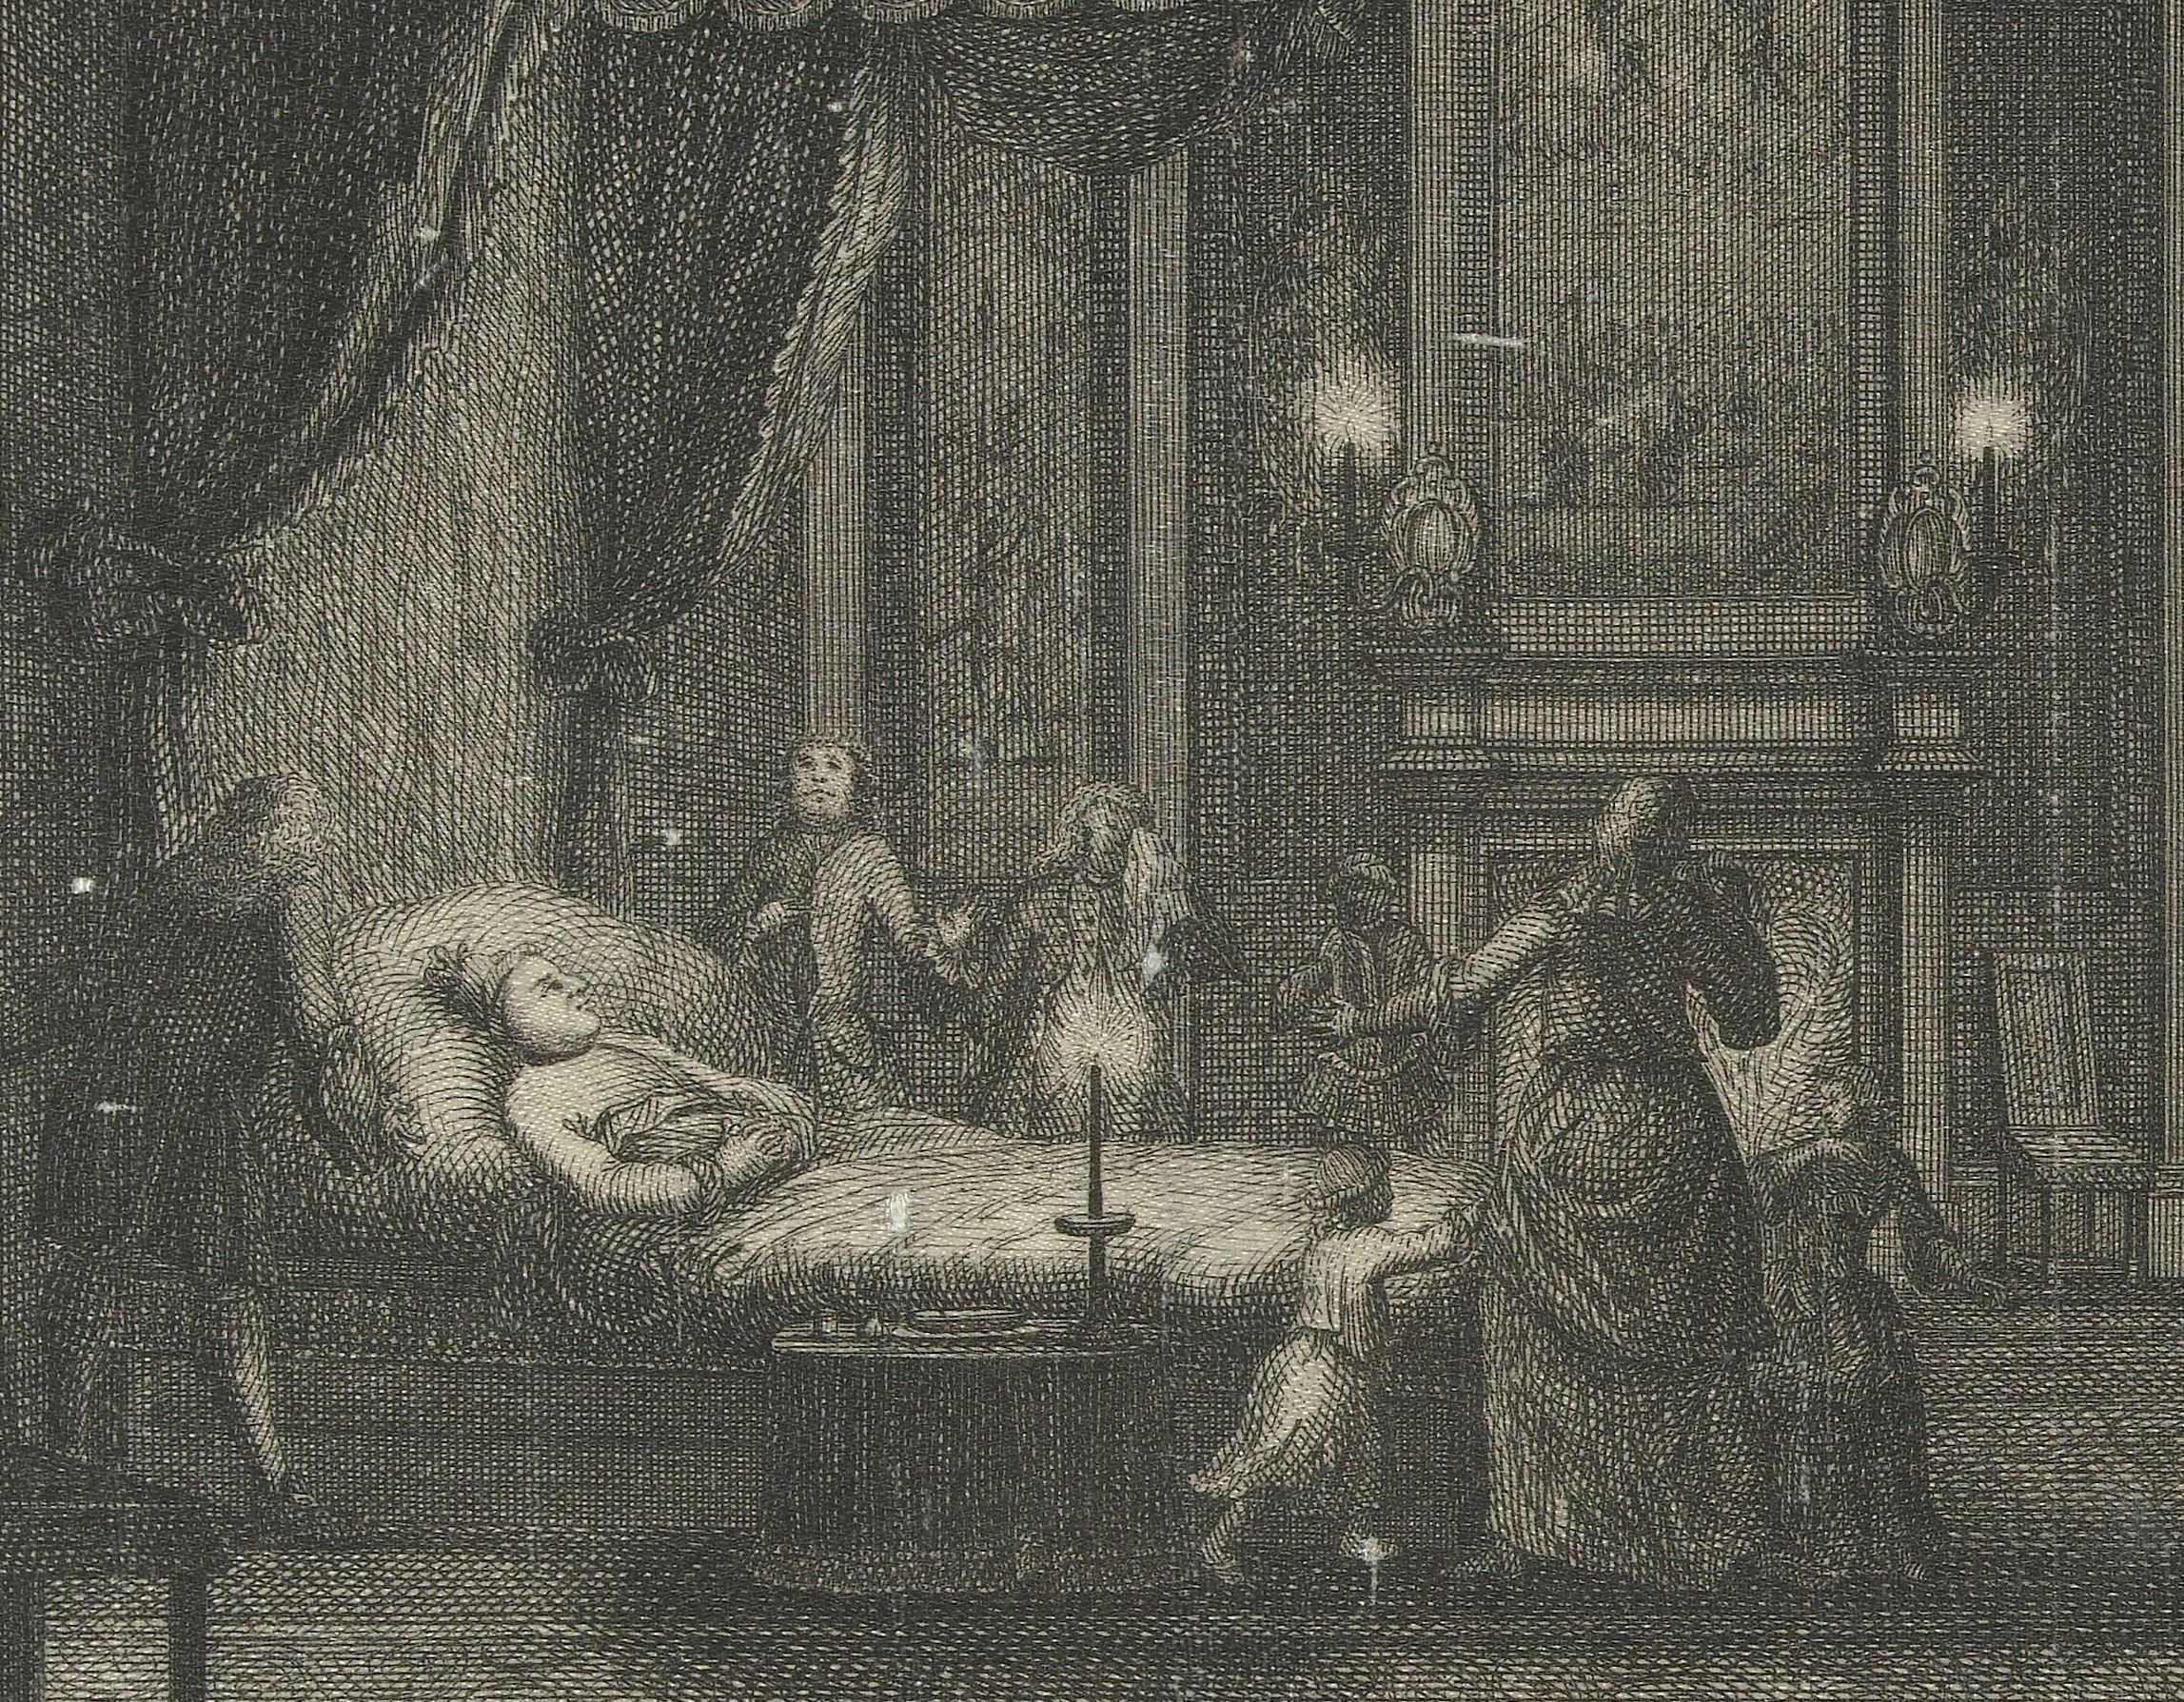 Overlijden prins Willem IV, anoniem, coll. Rijksmuseum